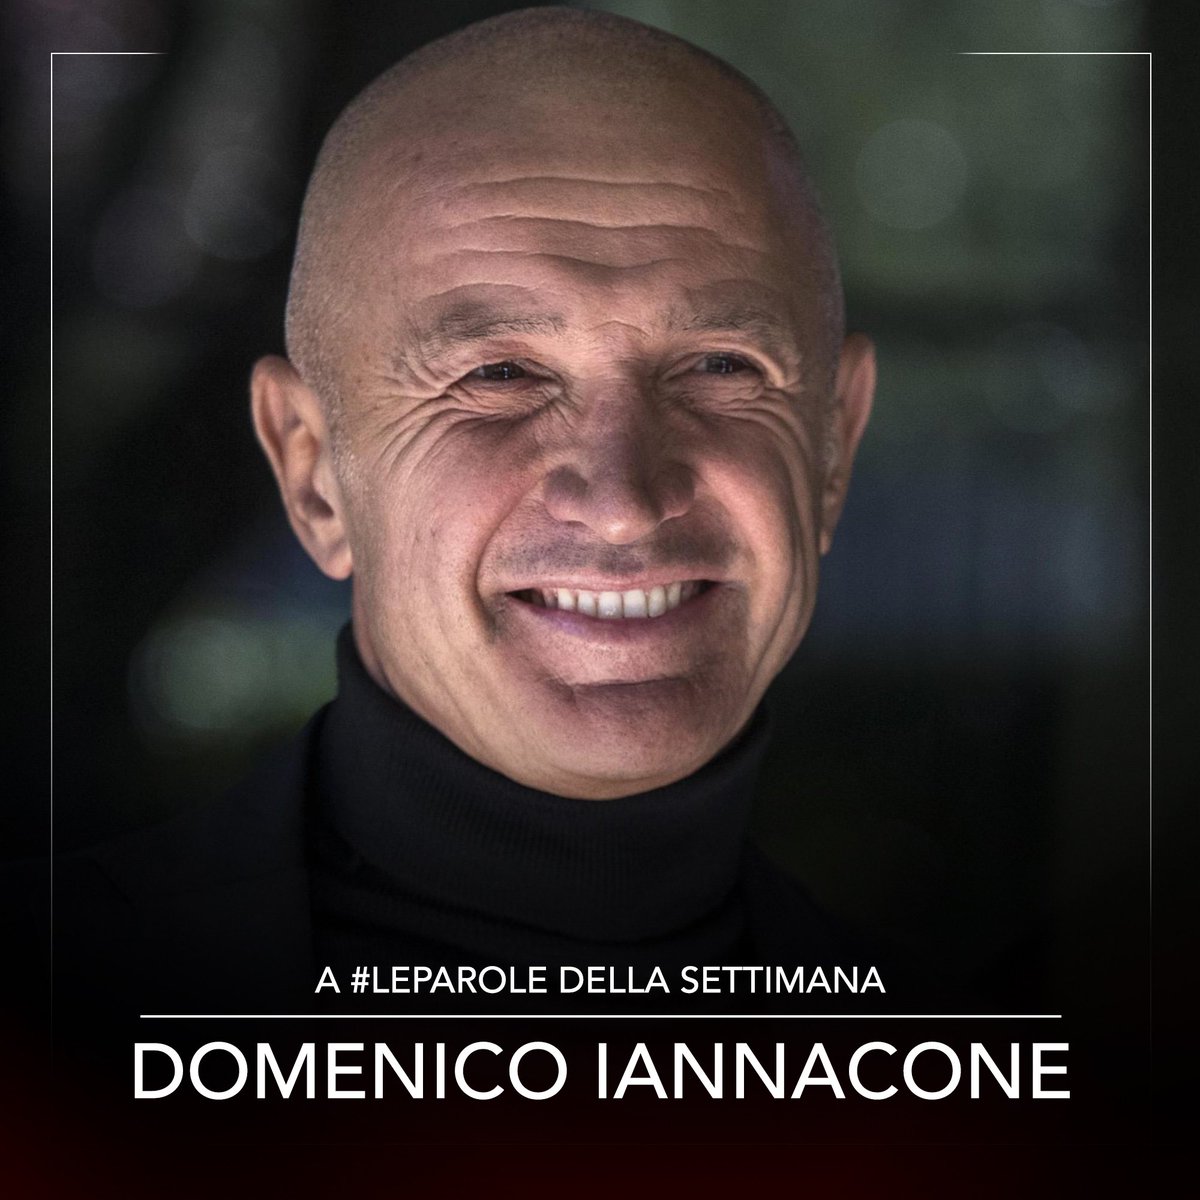 A #LeParole della Settimana: Domenico Iannacone

#Rai3 @RaiTre @MaxGramel #DomenicoIannacone